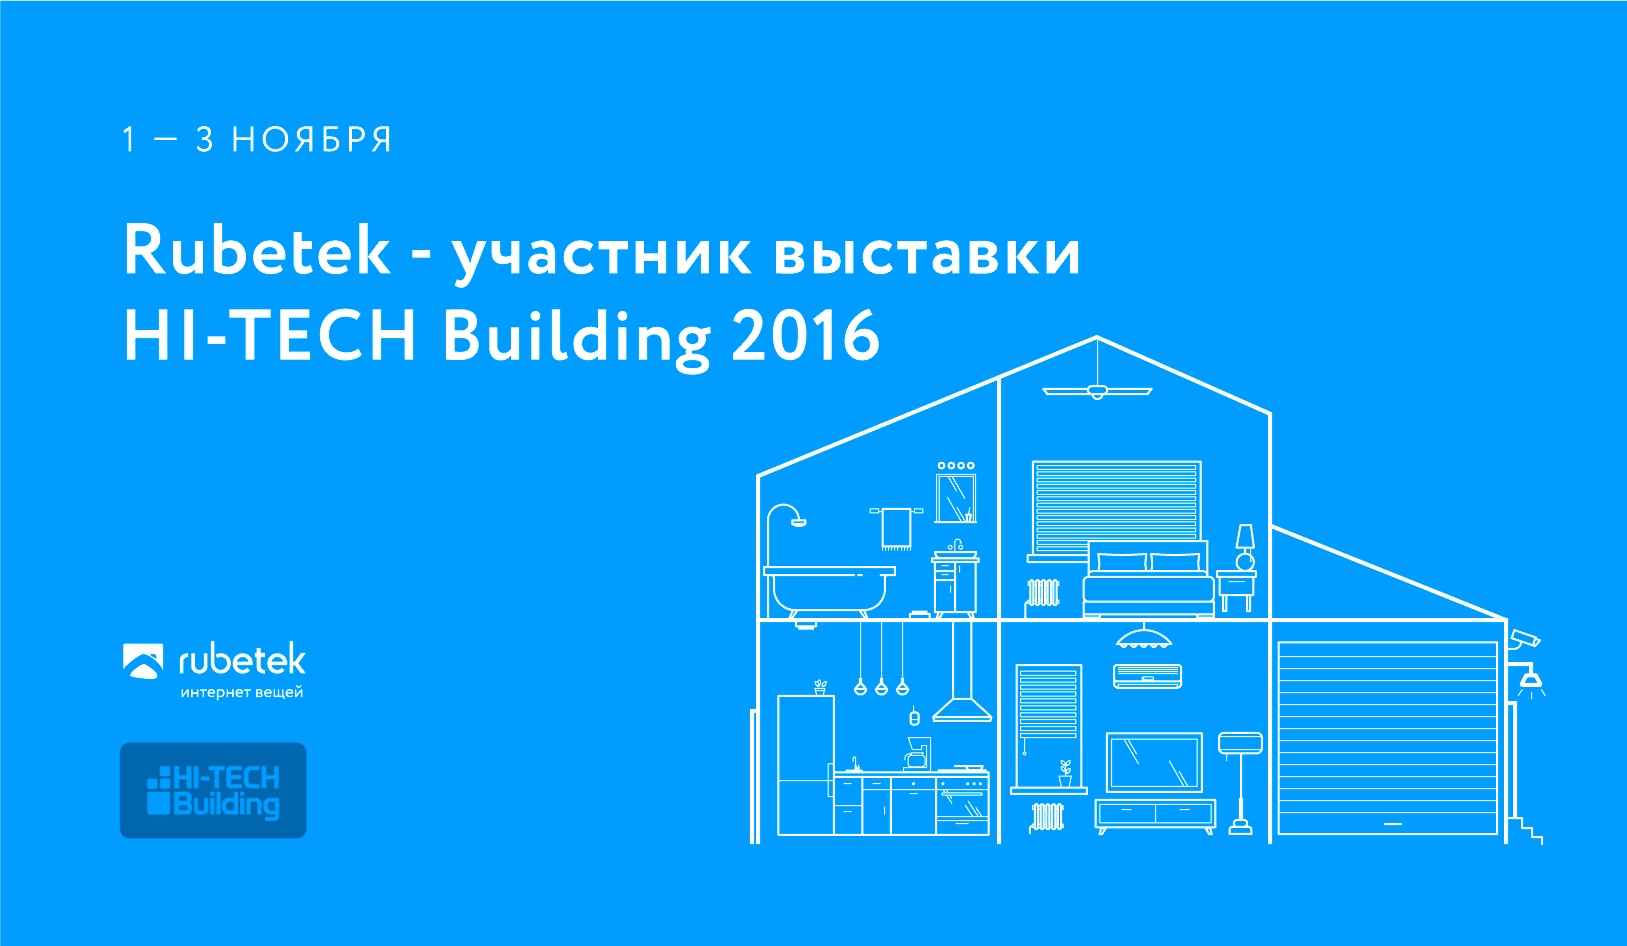 rubetek станет участником выставки HI-TECH Building 2016